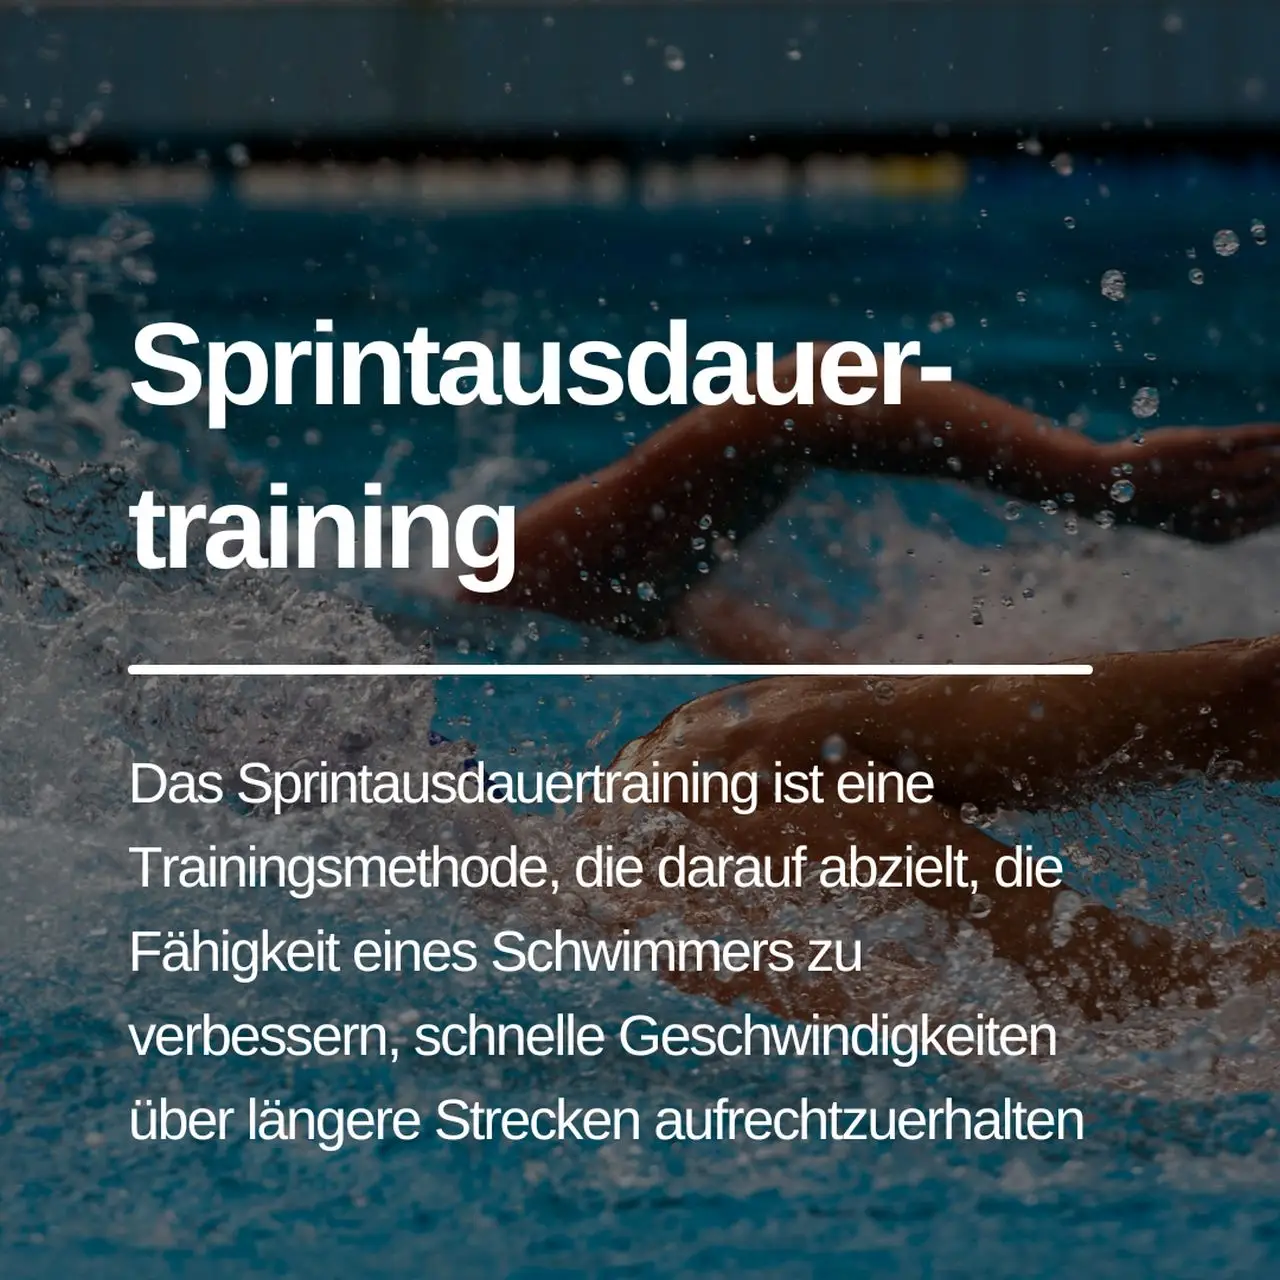 Mehr über den Artikel erfahren Sprintausdauertraining im Schwimmen